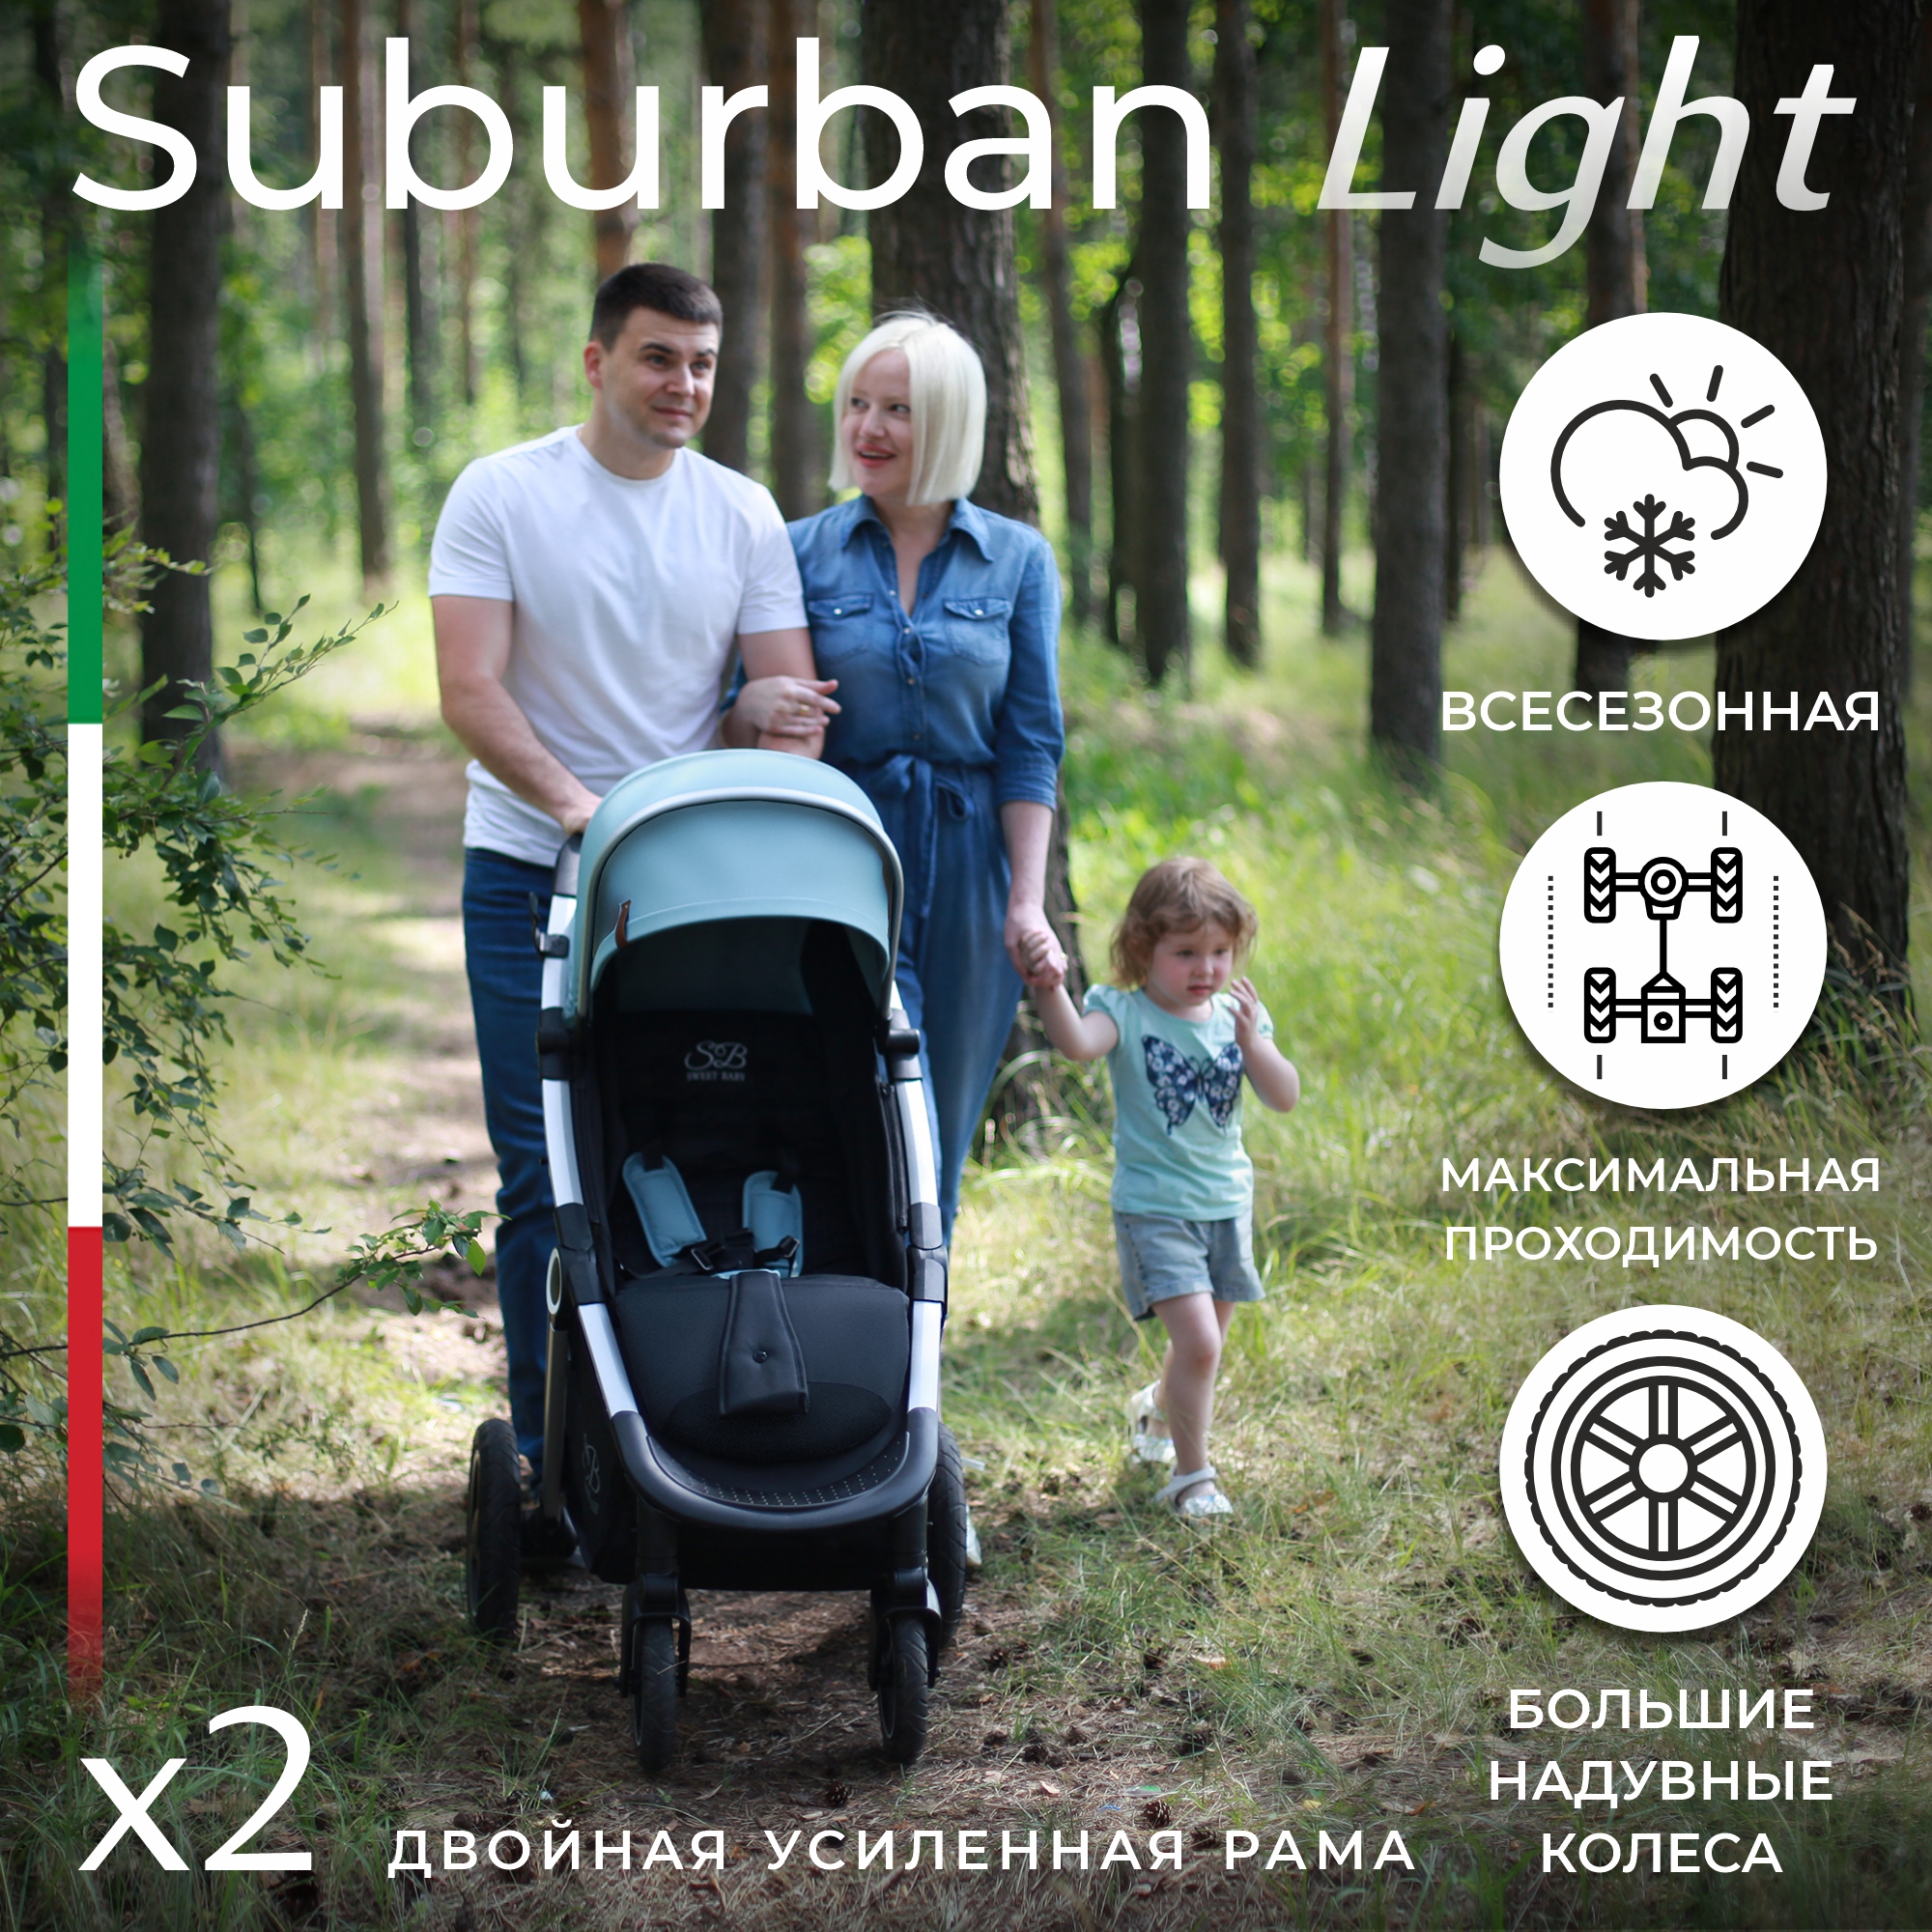 Прогулочная коляска Sweet Baby Suburban Light Green Air прогулочная коляска sweet baby suburban compatto dark green air 426720